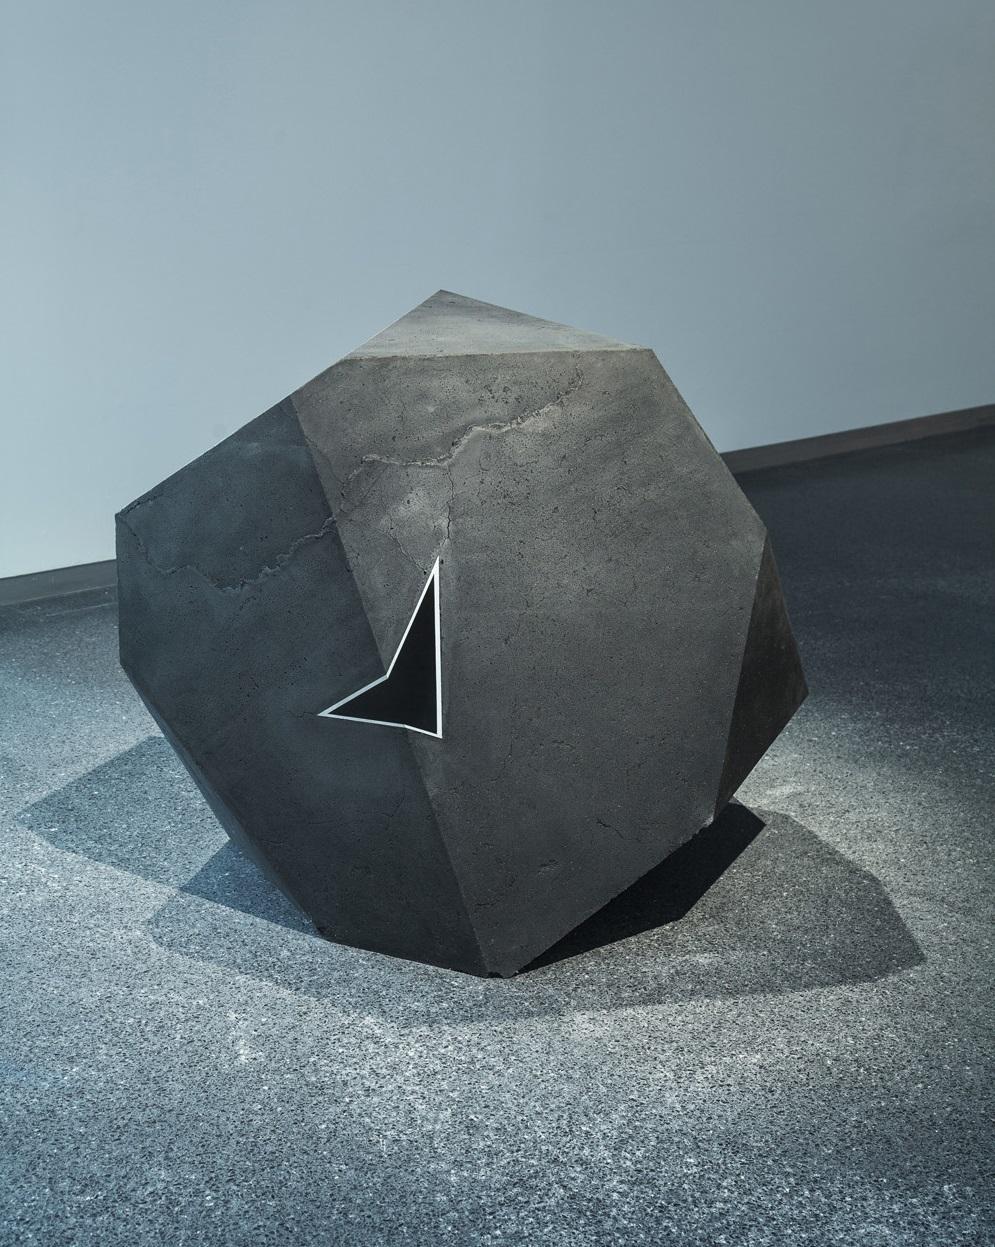 Carbon Void Aluminium par Tom Price - Sculpture géométrique abstraite, expérimentale